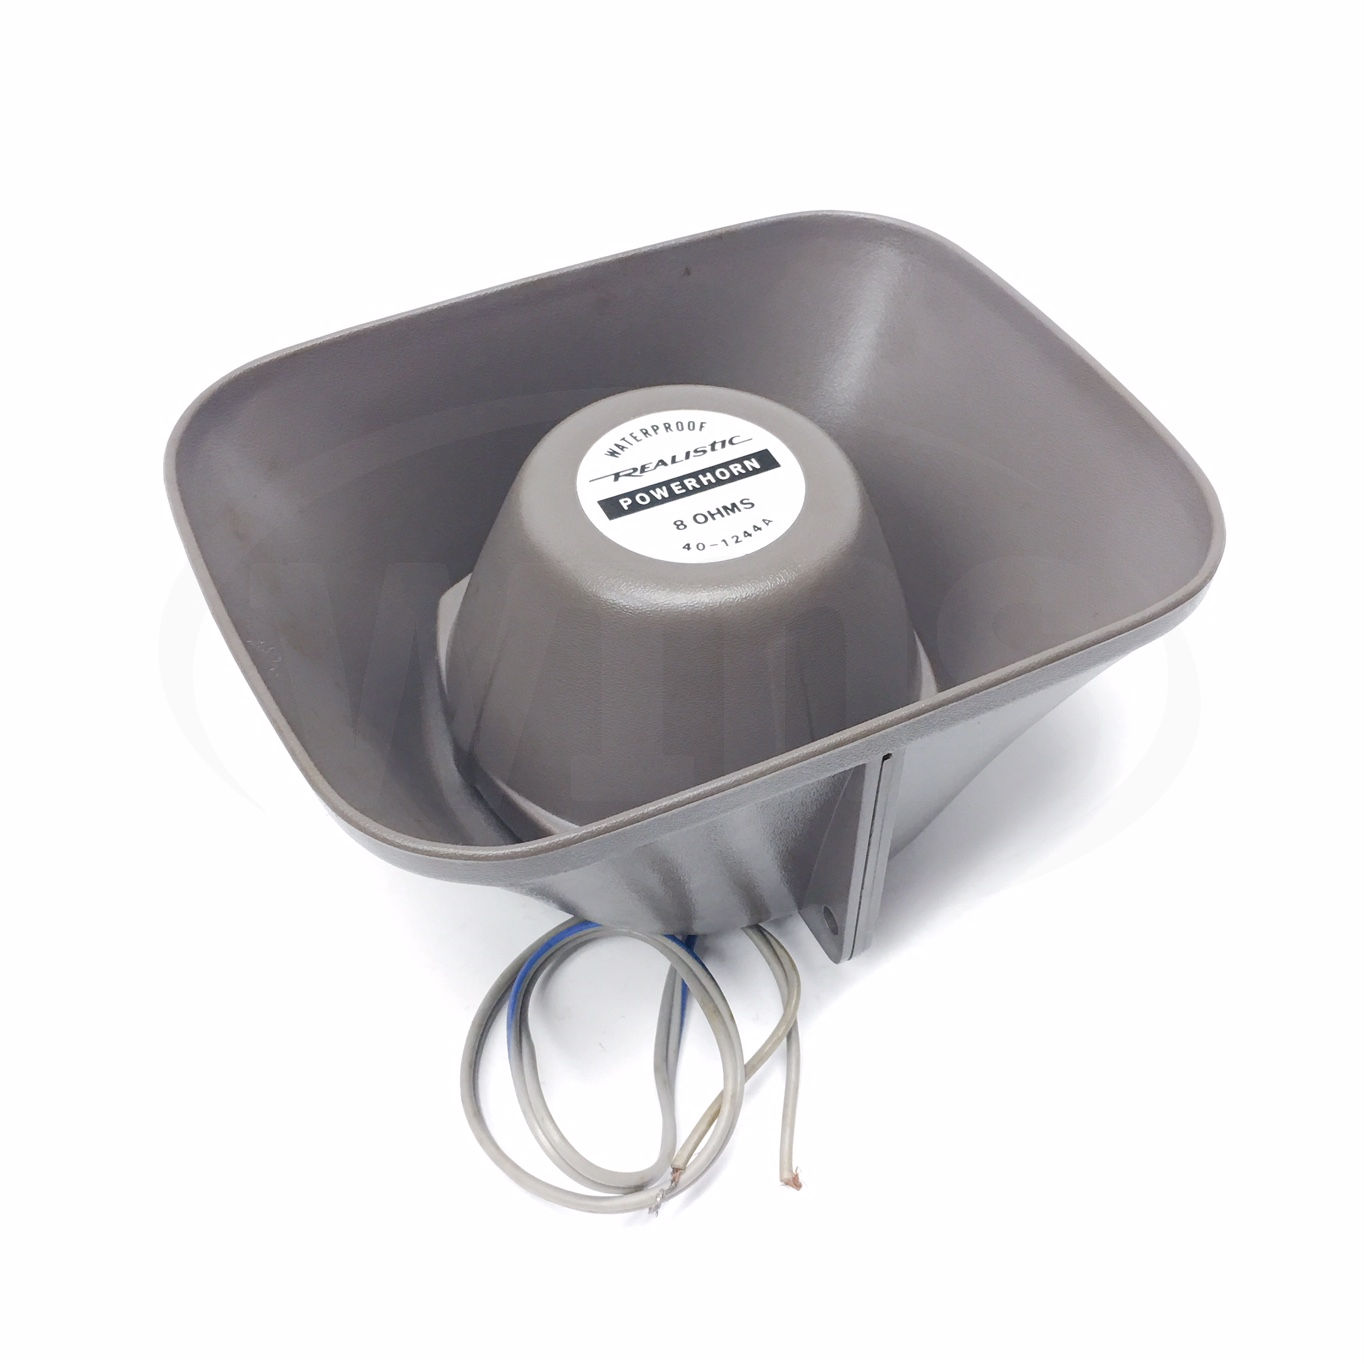 40-1244A Realistic Powerhorn 4' Waterproof Speaker 1